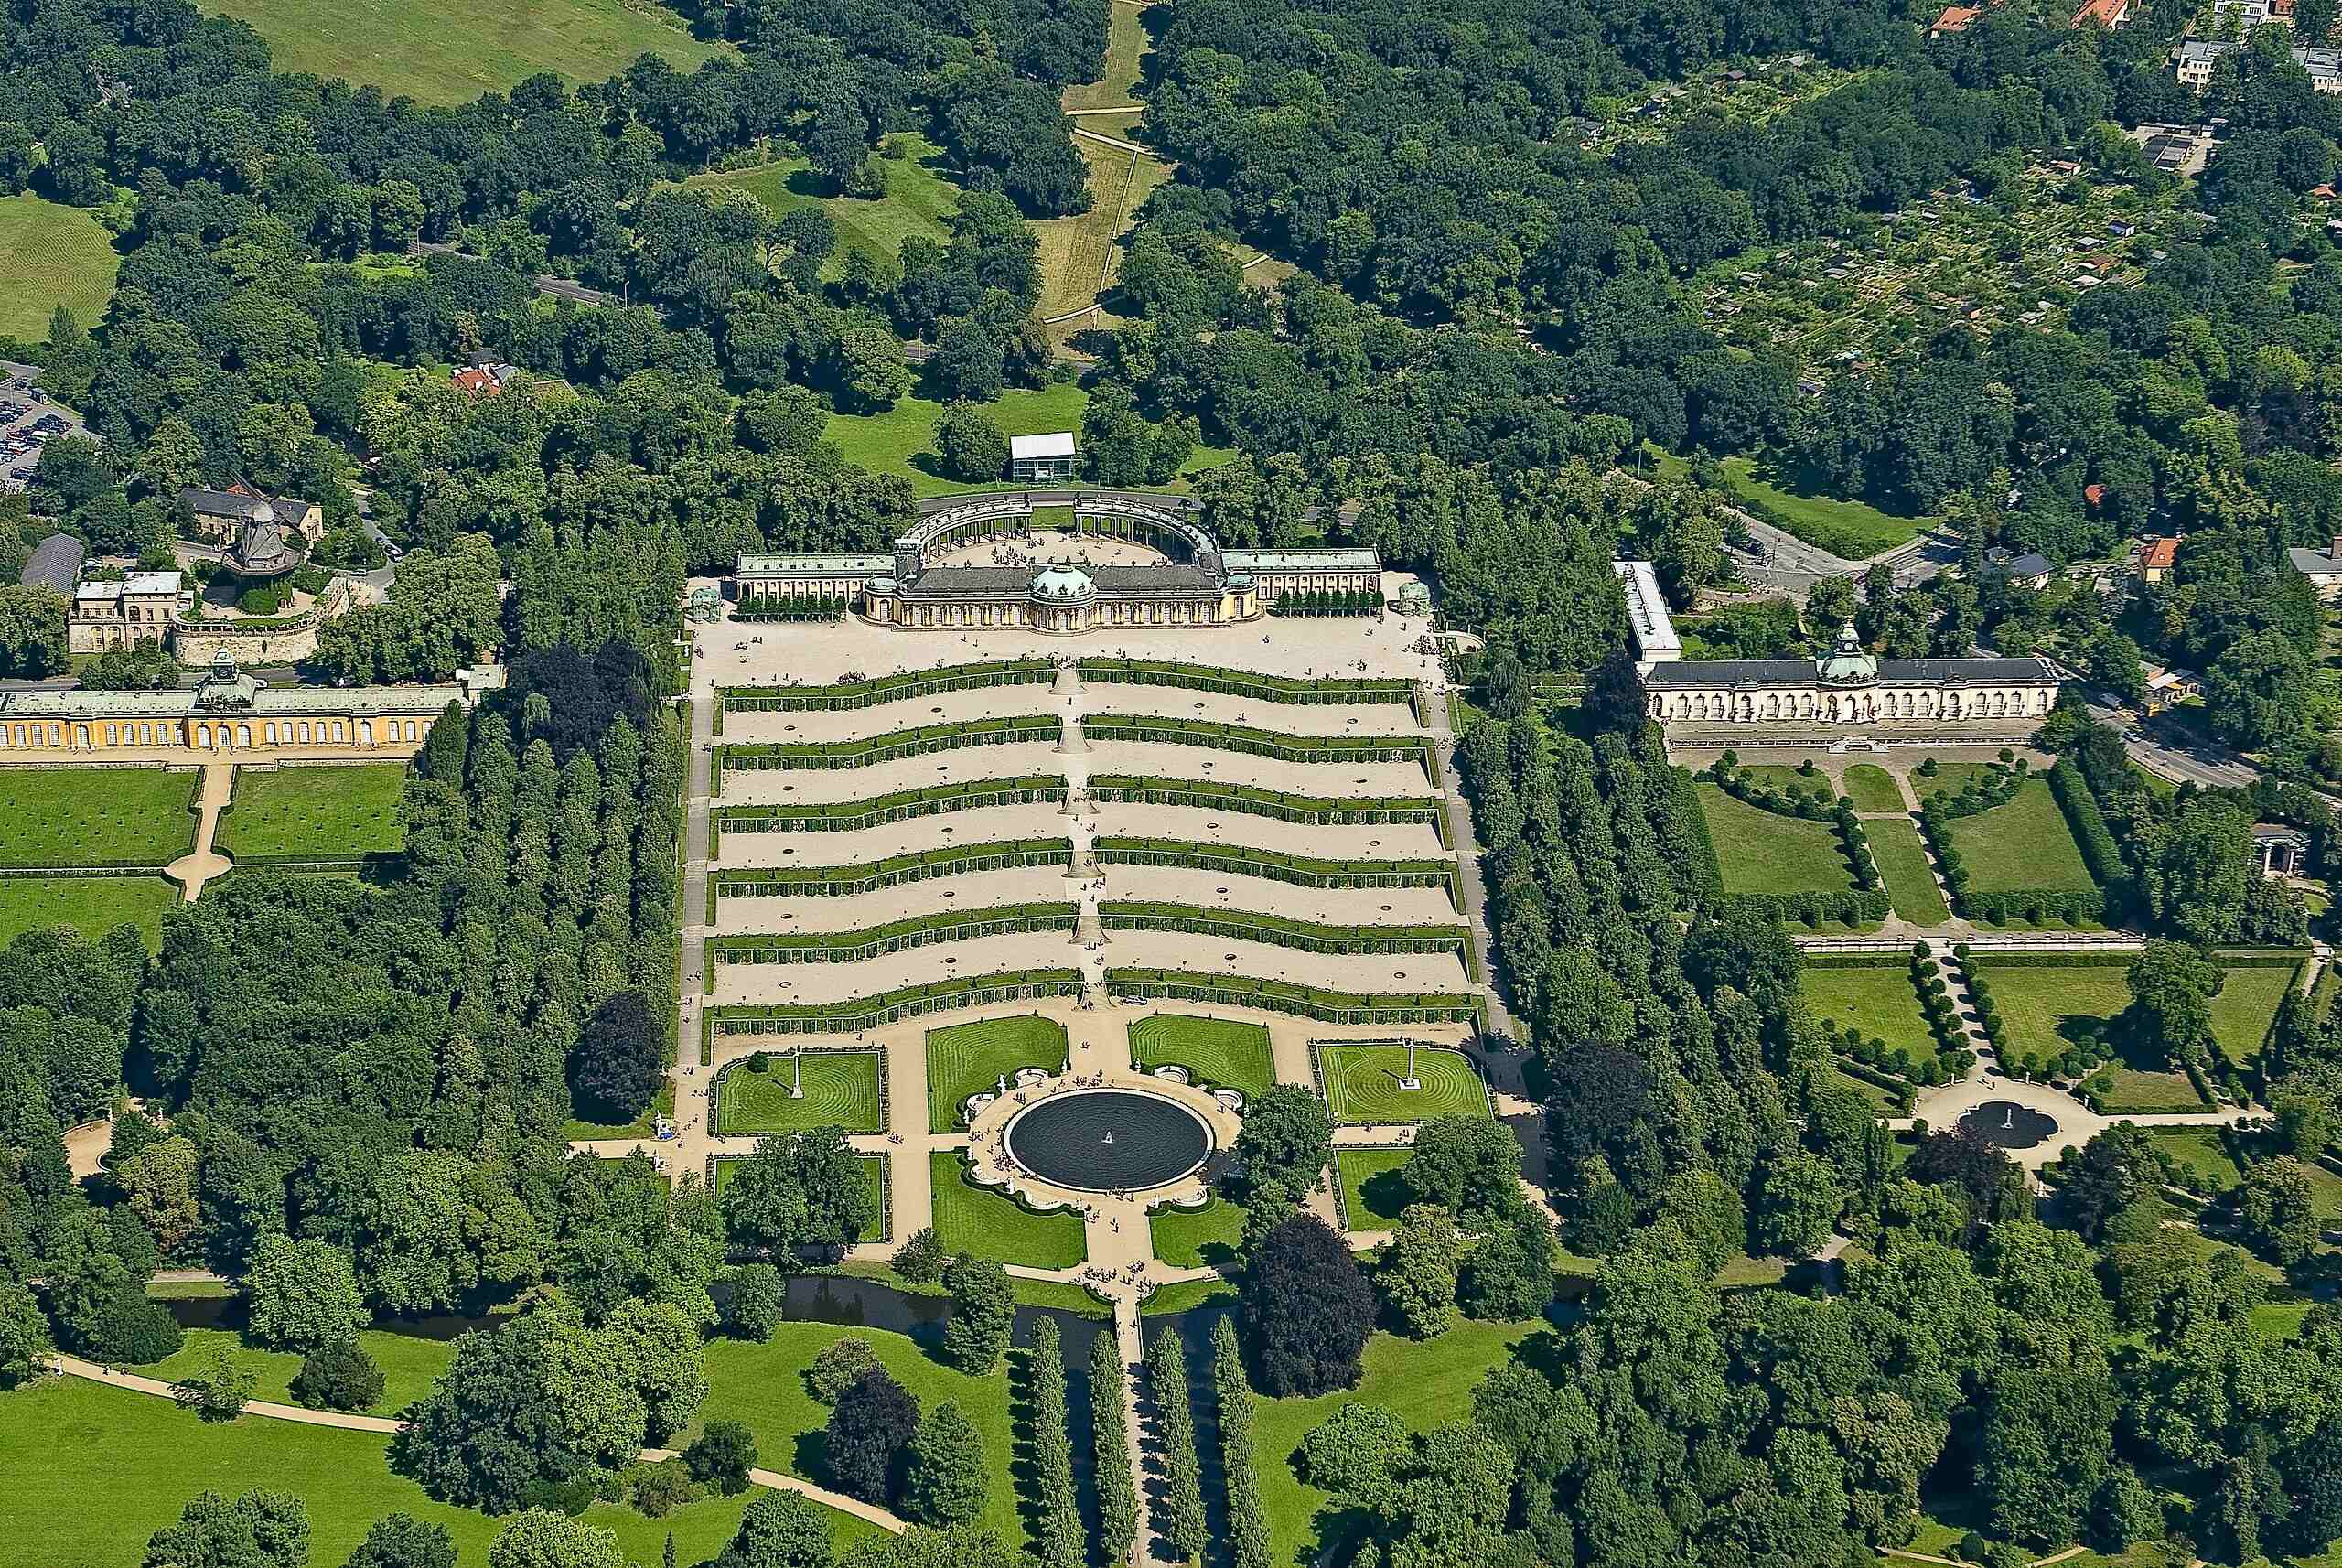 Le palais et le parc de Sans-souci, ou Sanssouci, à Potsdam  - Page 2 2560px16